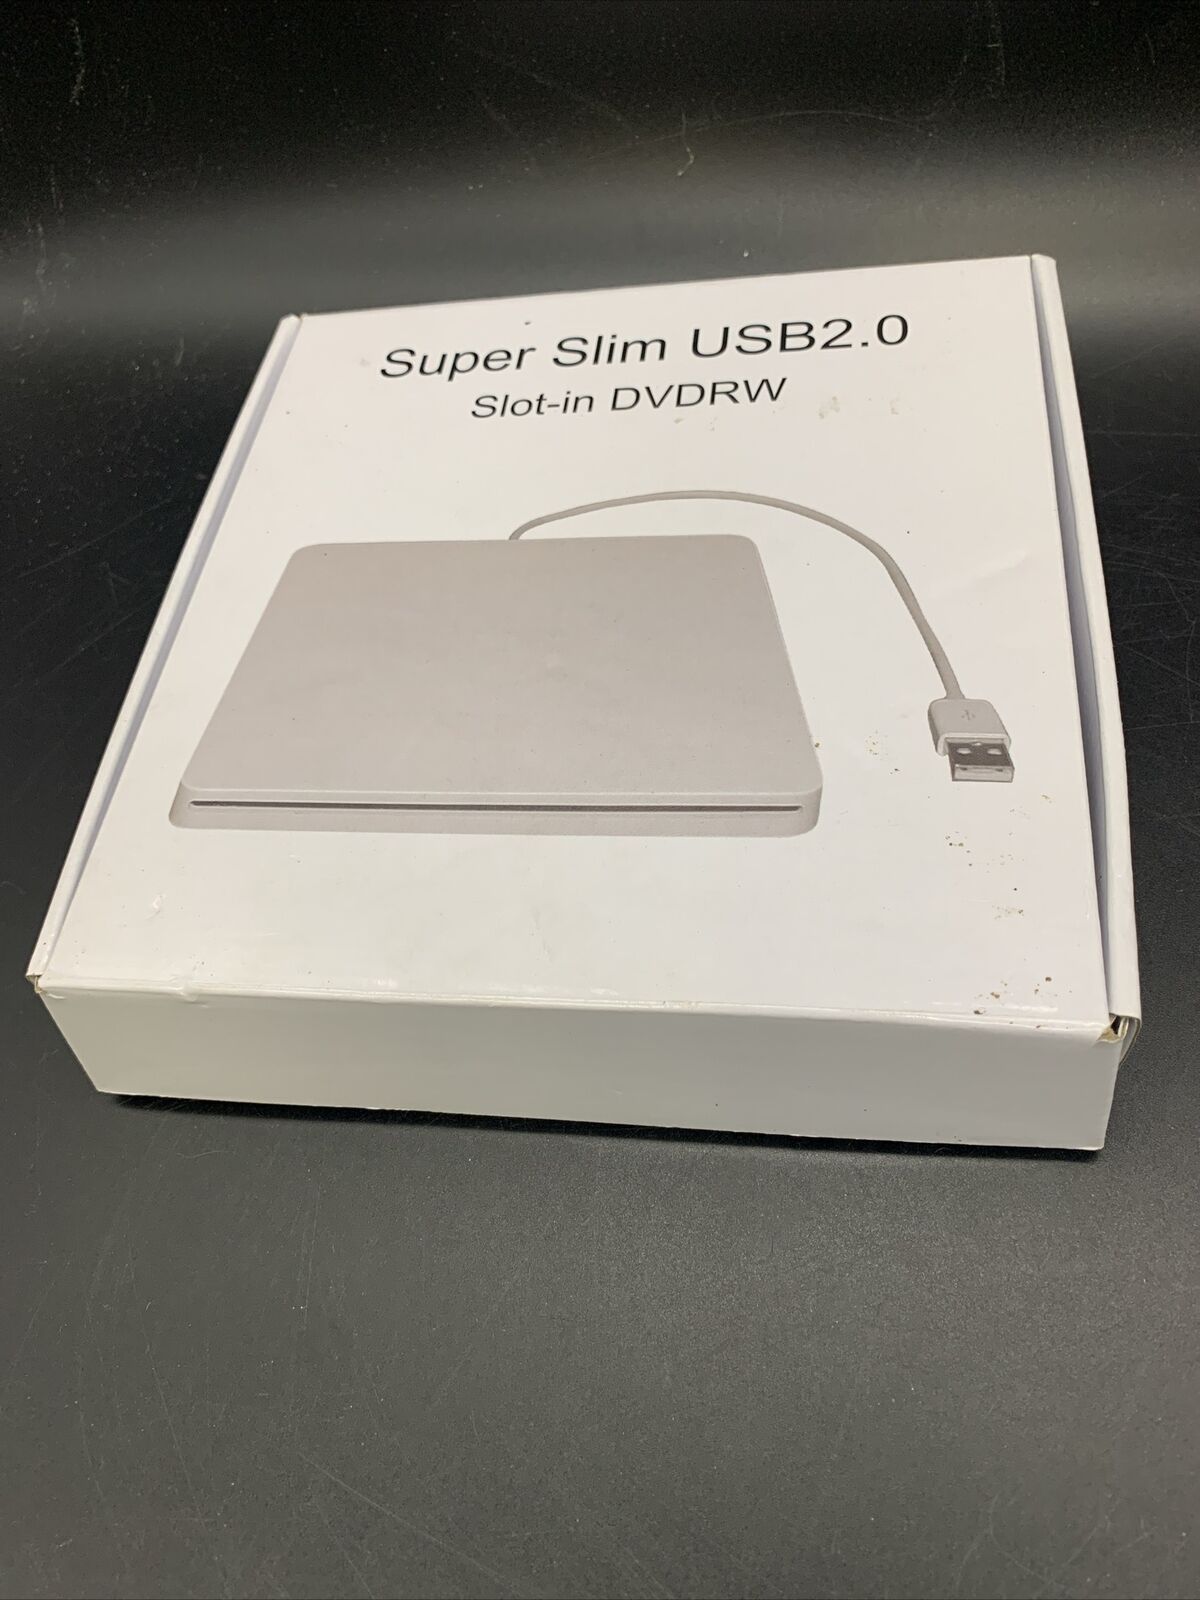 SUPER SLIM USB 2.0 Slot-in DVDRW USB EXTERNAL DVD DRIVE NEW OPEN BOX